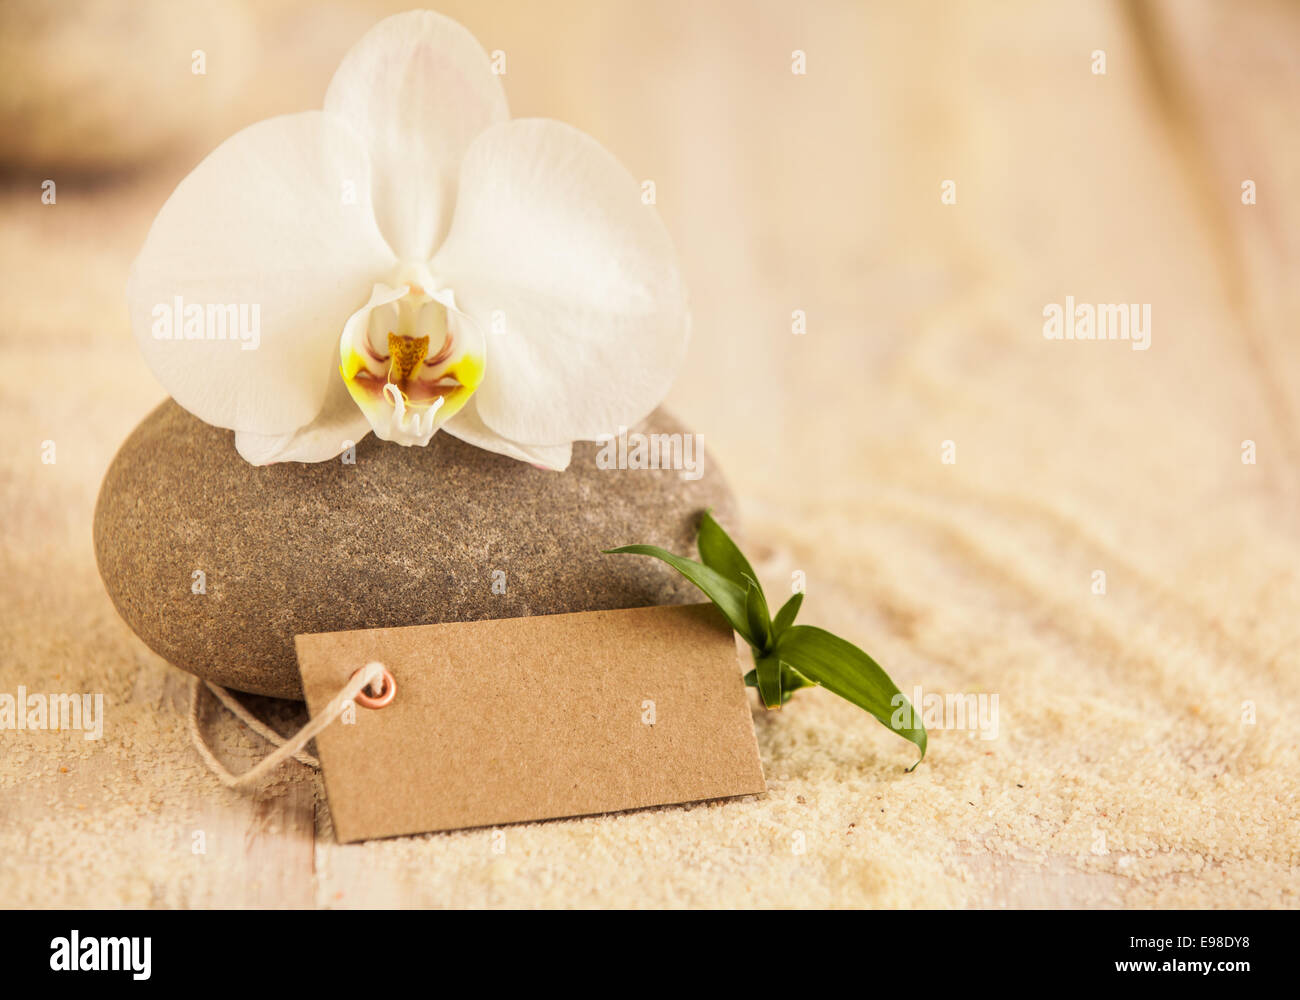 Schönes Spa-Stillleben mit eine reine weiße frische Phalaenopsis Orchidee auf einem Massagestein mit einem leeren braunen Geschenkanhänger und goldenen Meeressand Darstellung Behandlungen, verwöhnen, Wellness und beauty Stockfoto